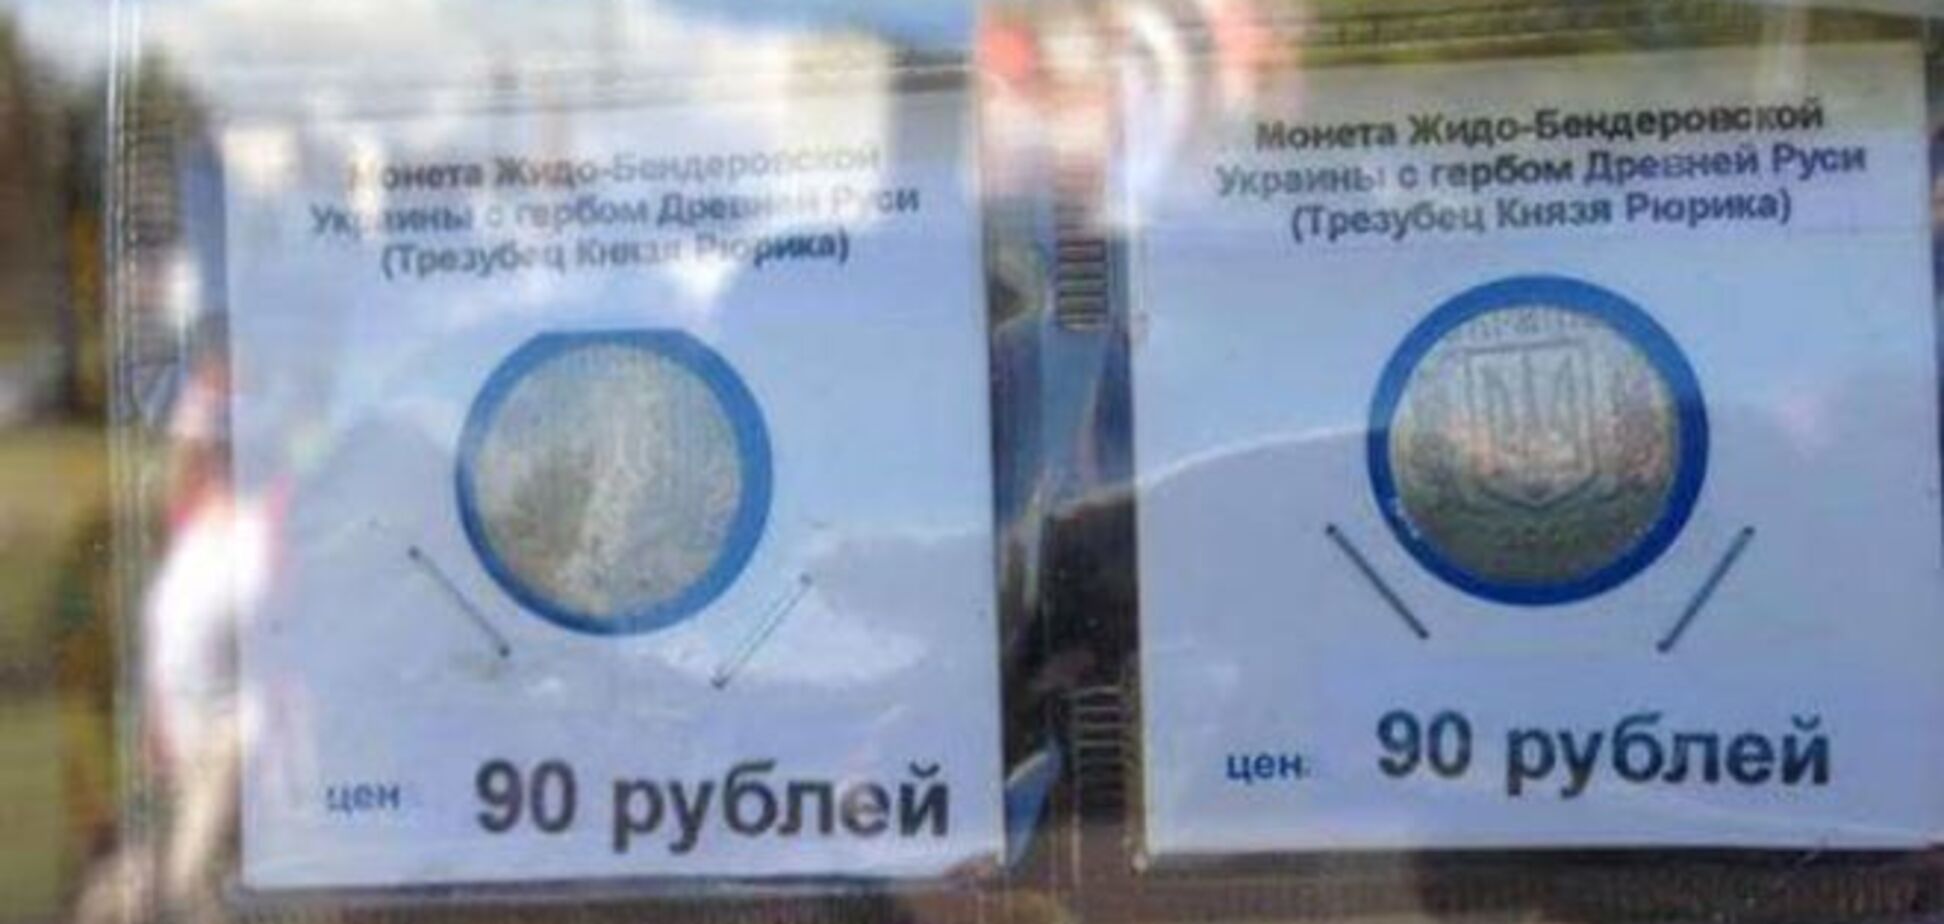 У Росії надійшли у продаж 'монети жидо-бендерівської України': фотофакт